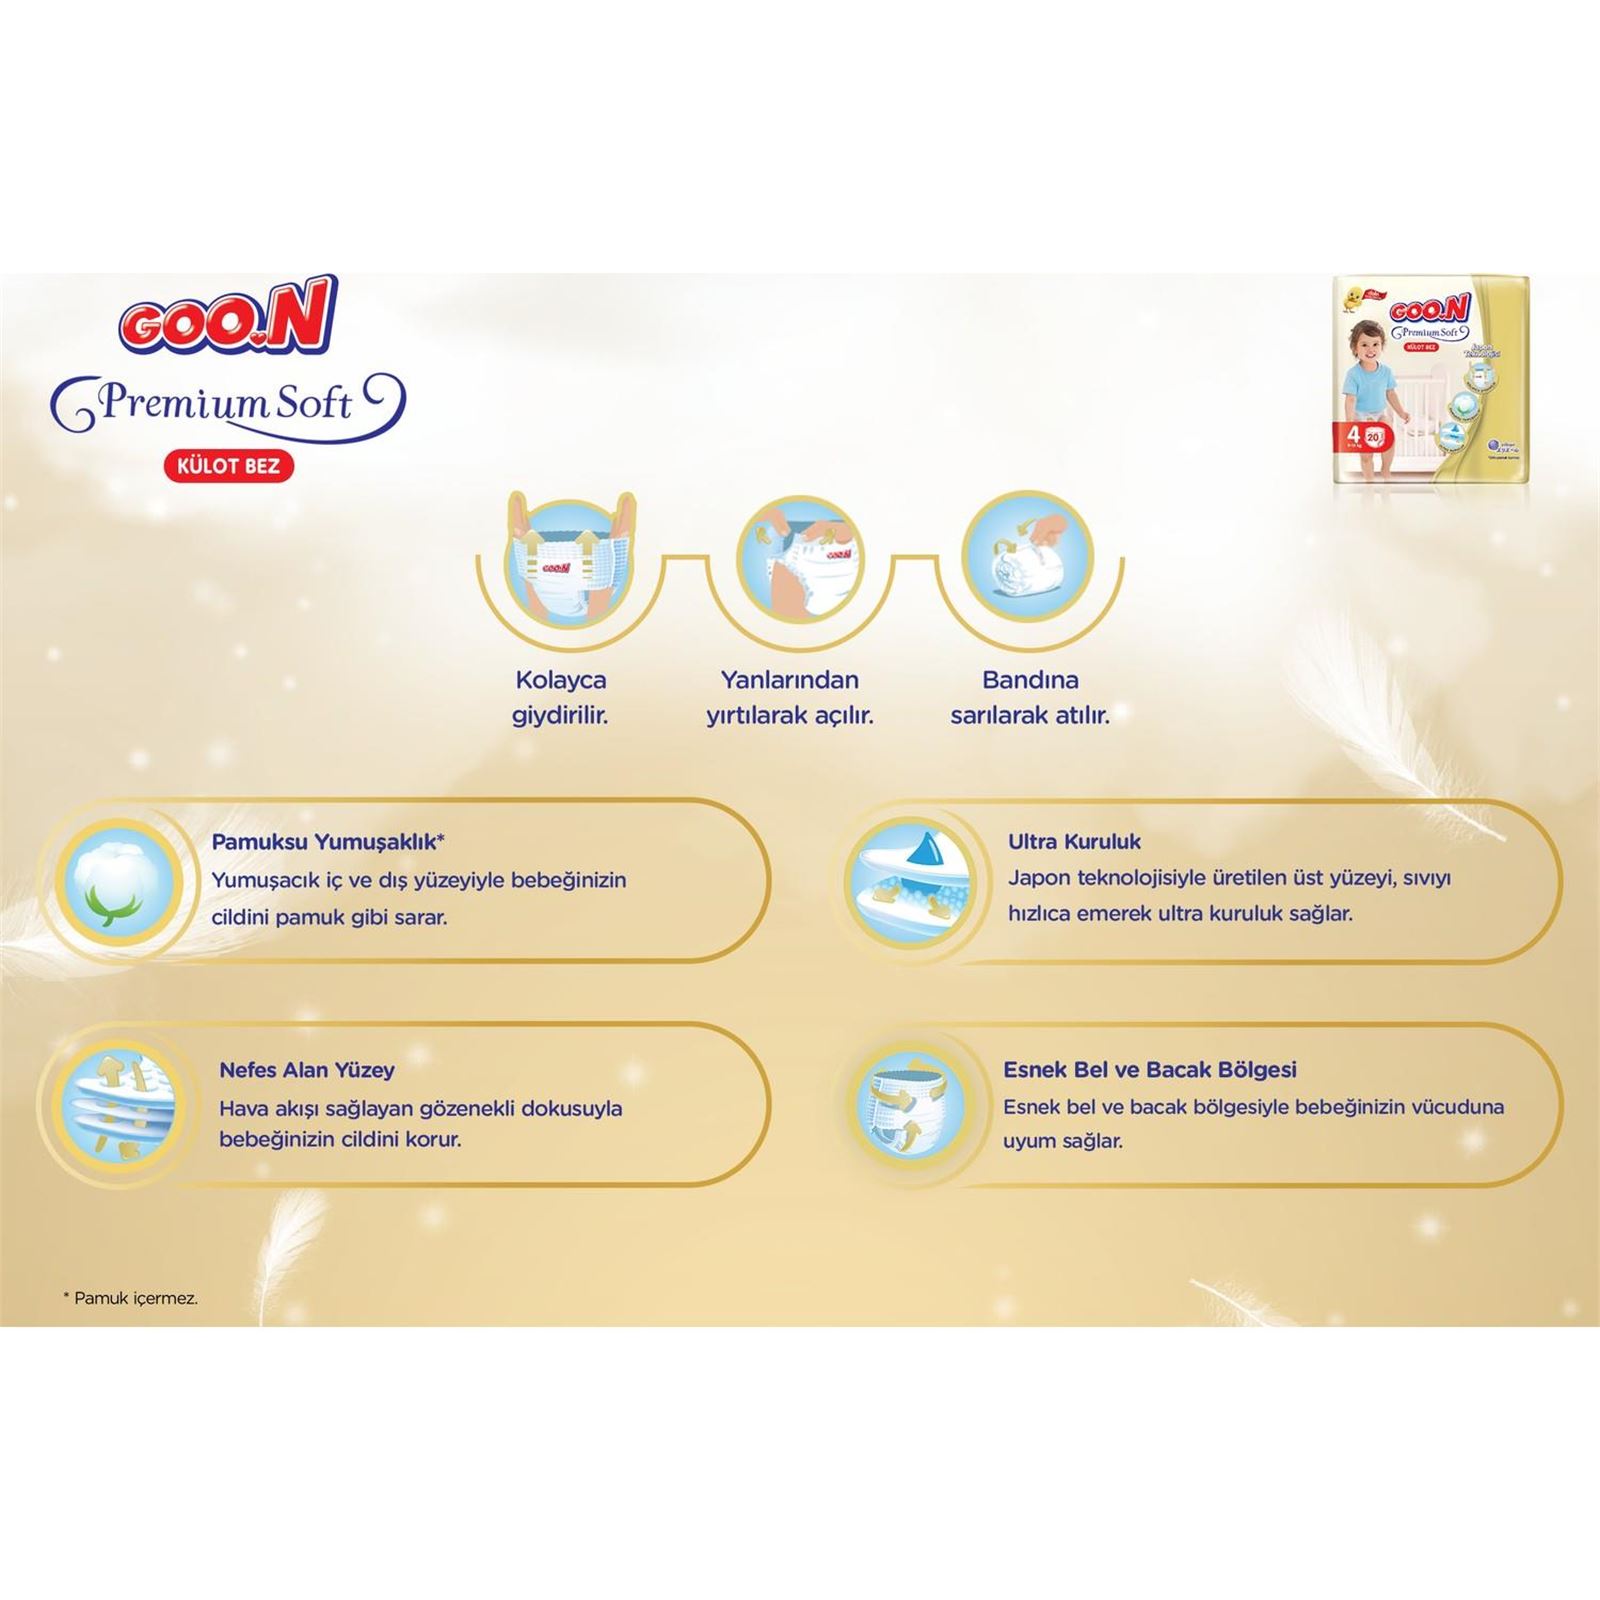 Goon Premium Külot İkiz Bebek Bezi 7 Beden 60 Adet Aylık Fırsat Paketi